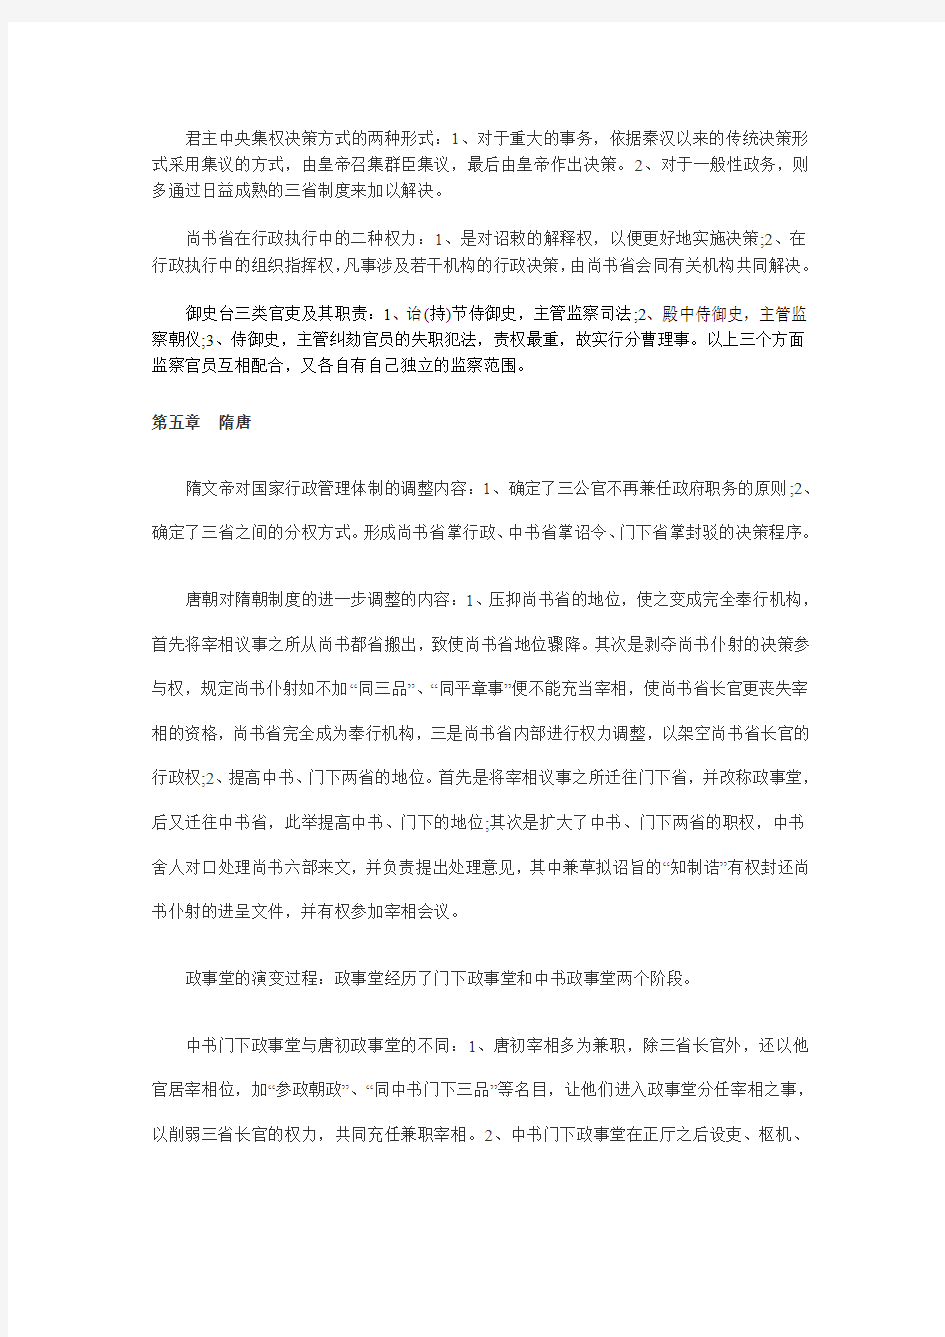 2011年自考《中国行政史》复习资料第九章